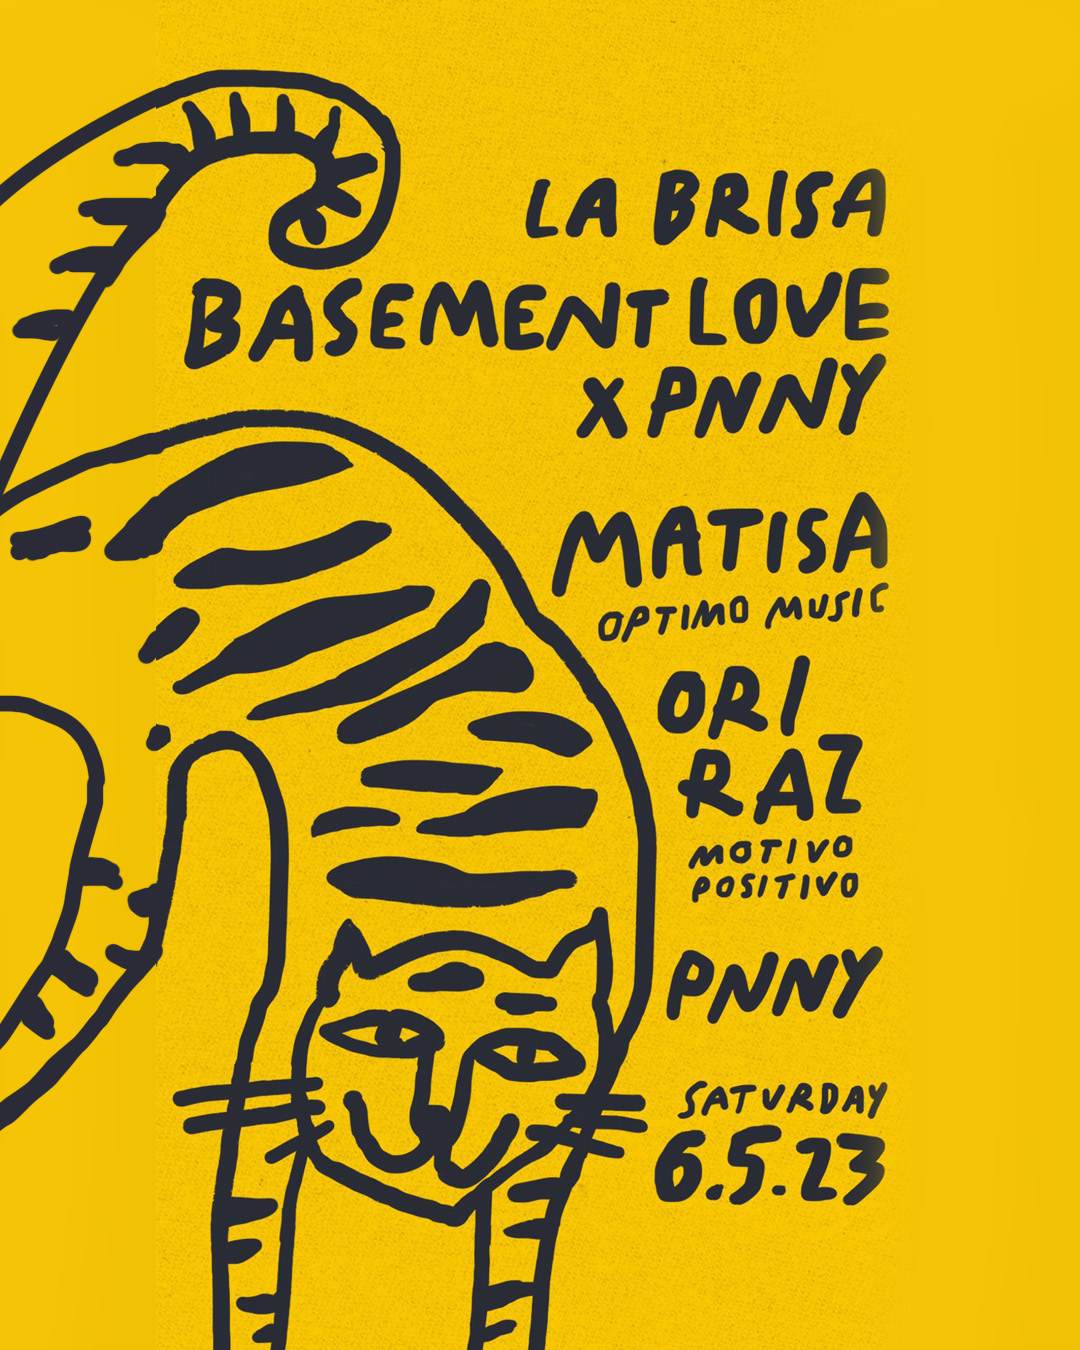 LA BRISA PRESENTS BASEMENT LOVE X PNNY – SATURDAY MAY 6TH thumbnail image